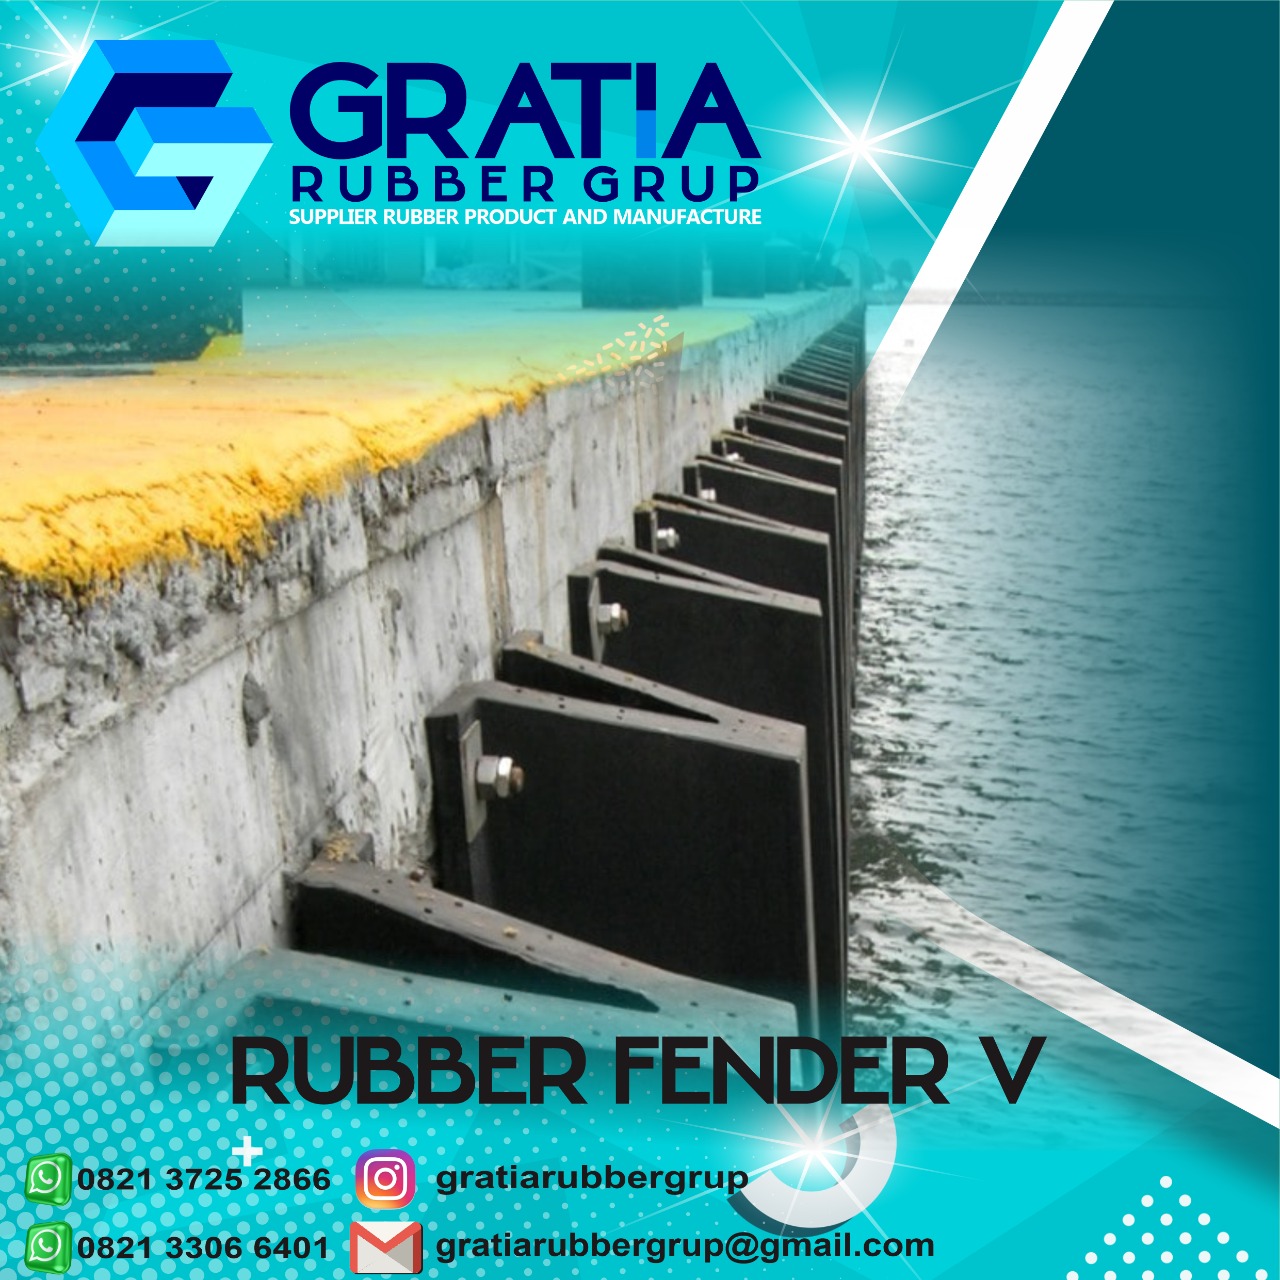 Jual Rubber Fender Boat Terlengkap  Melayani Pengiriman Ke Jakarta Utara Hub 0821 3306 0461